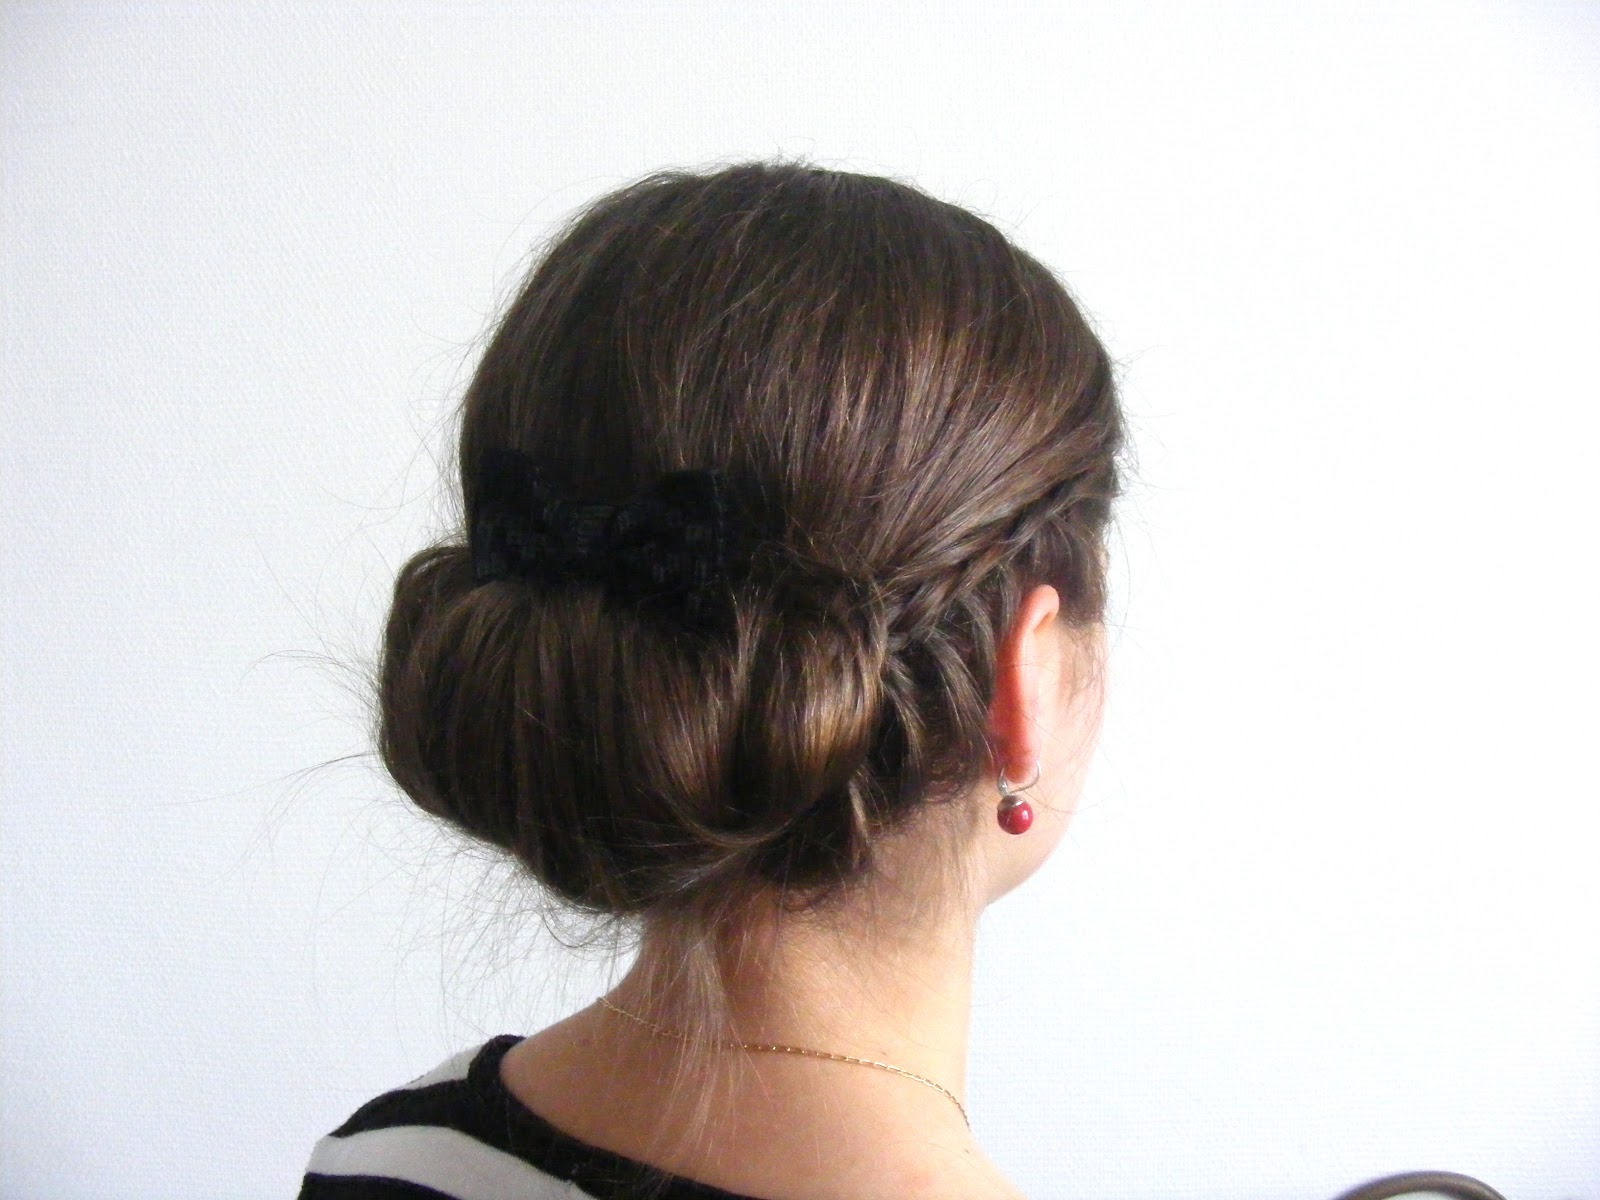 frizuramánia: ez a kedves frizura félhosszú, egyenes hajból készült. a